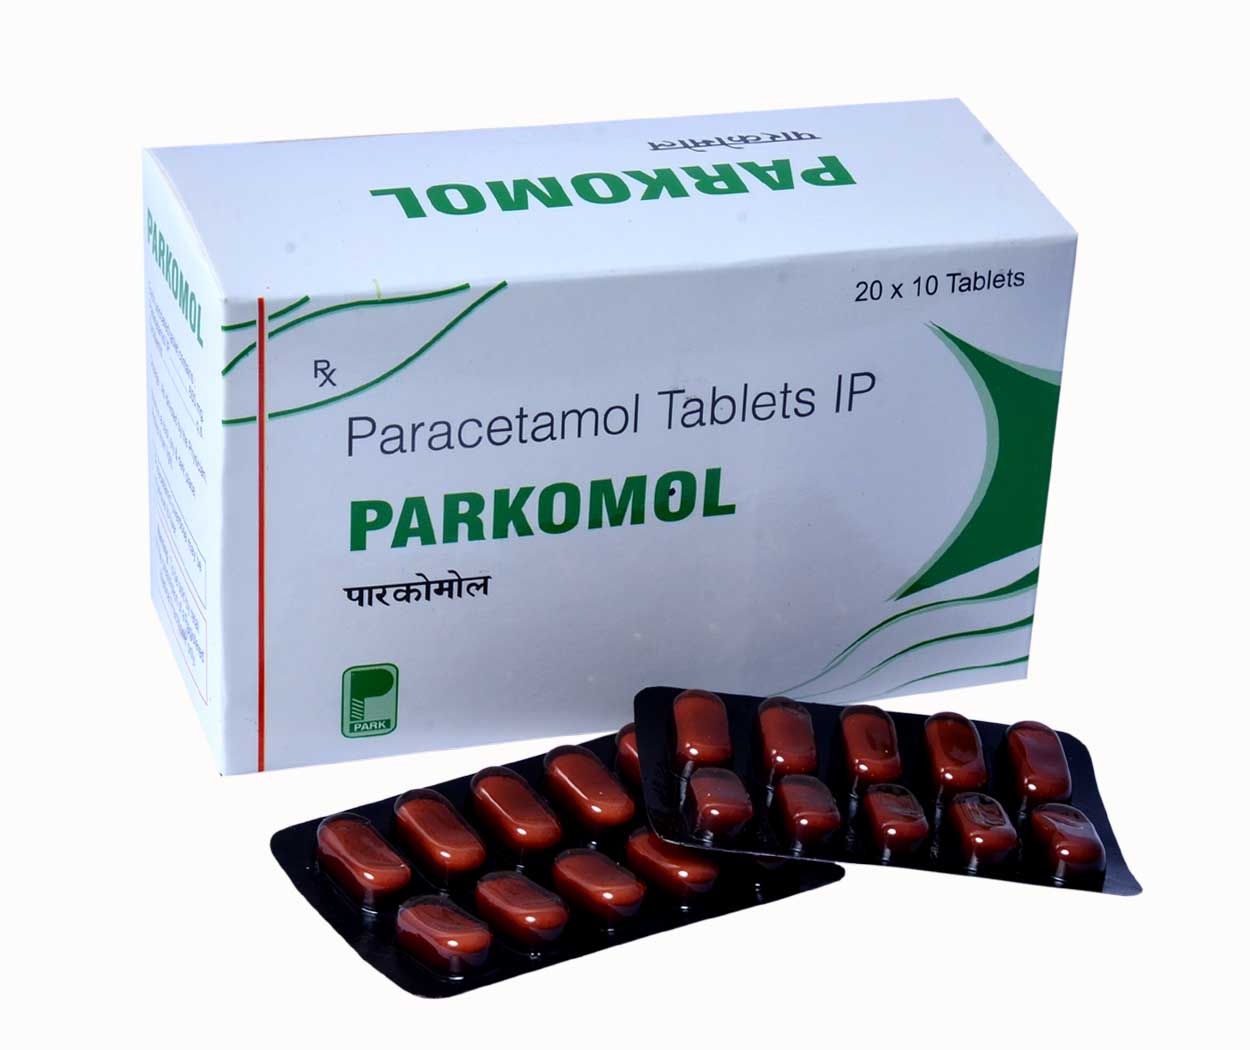 PARKOMOL are Paracetamol Tablets IP - Park Pharmaceuticals